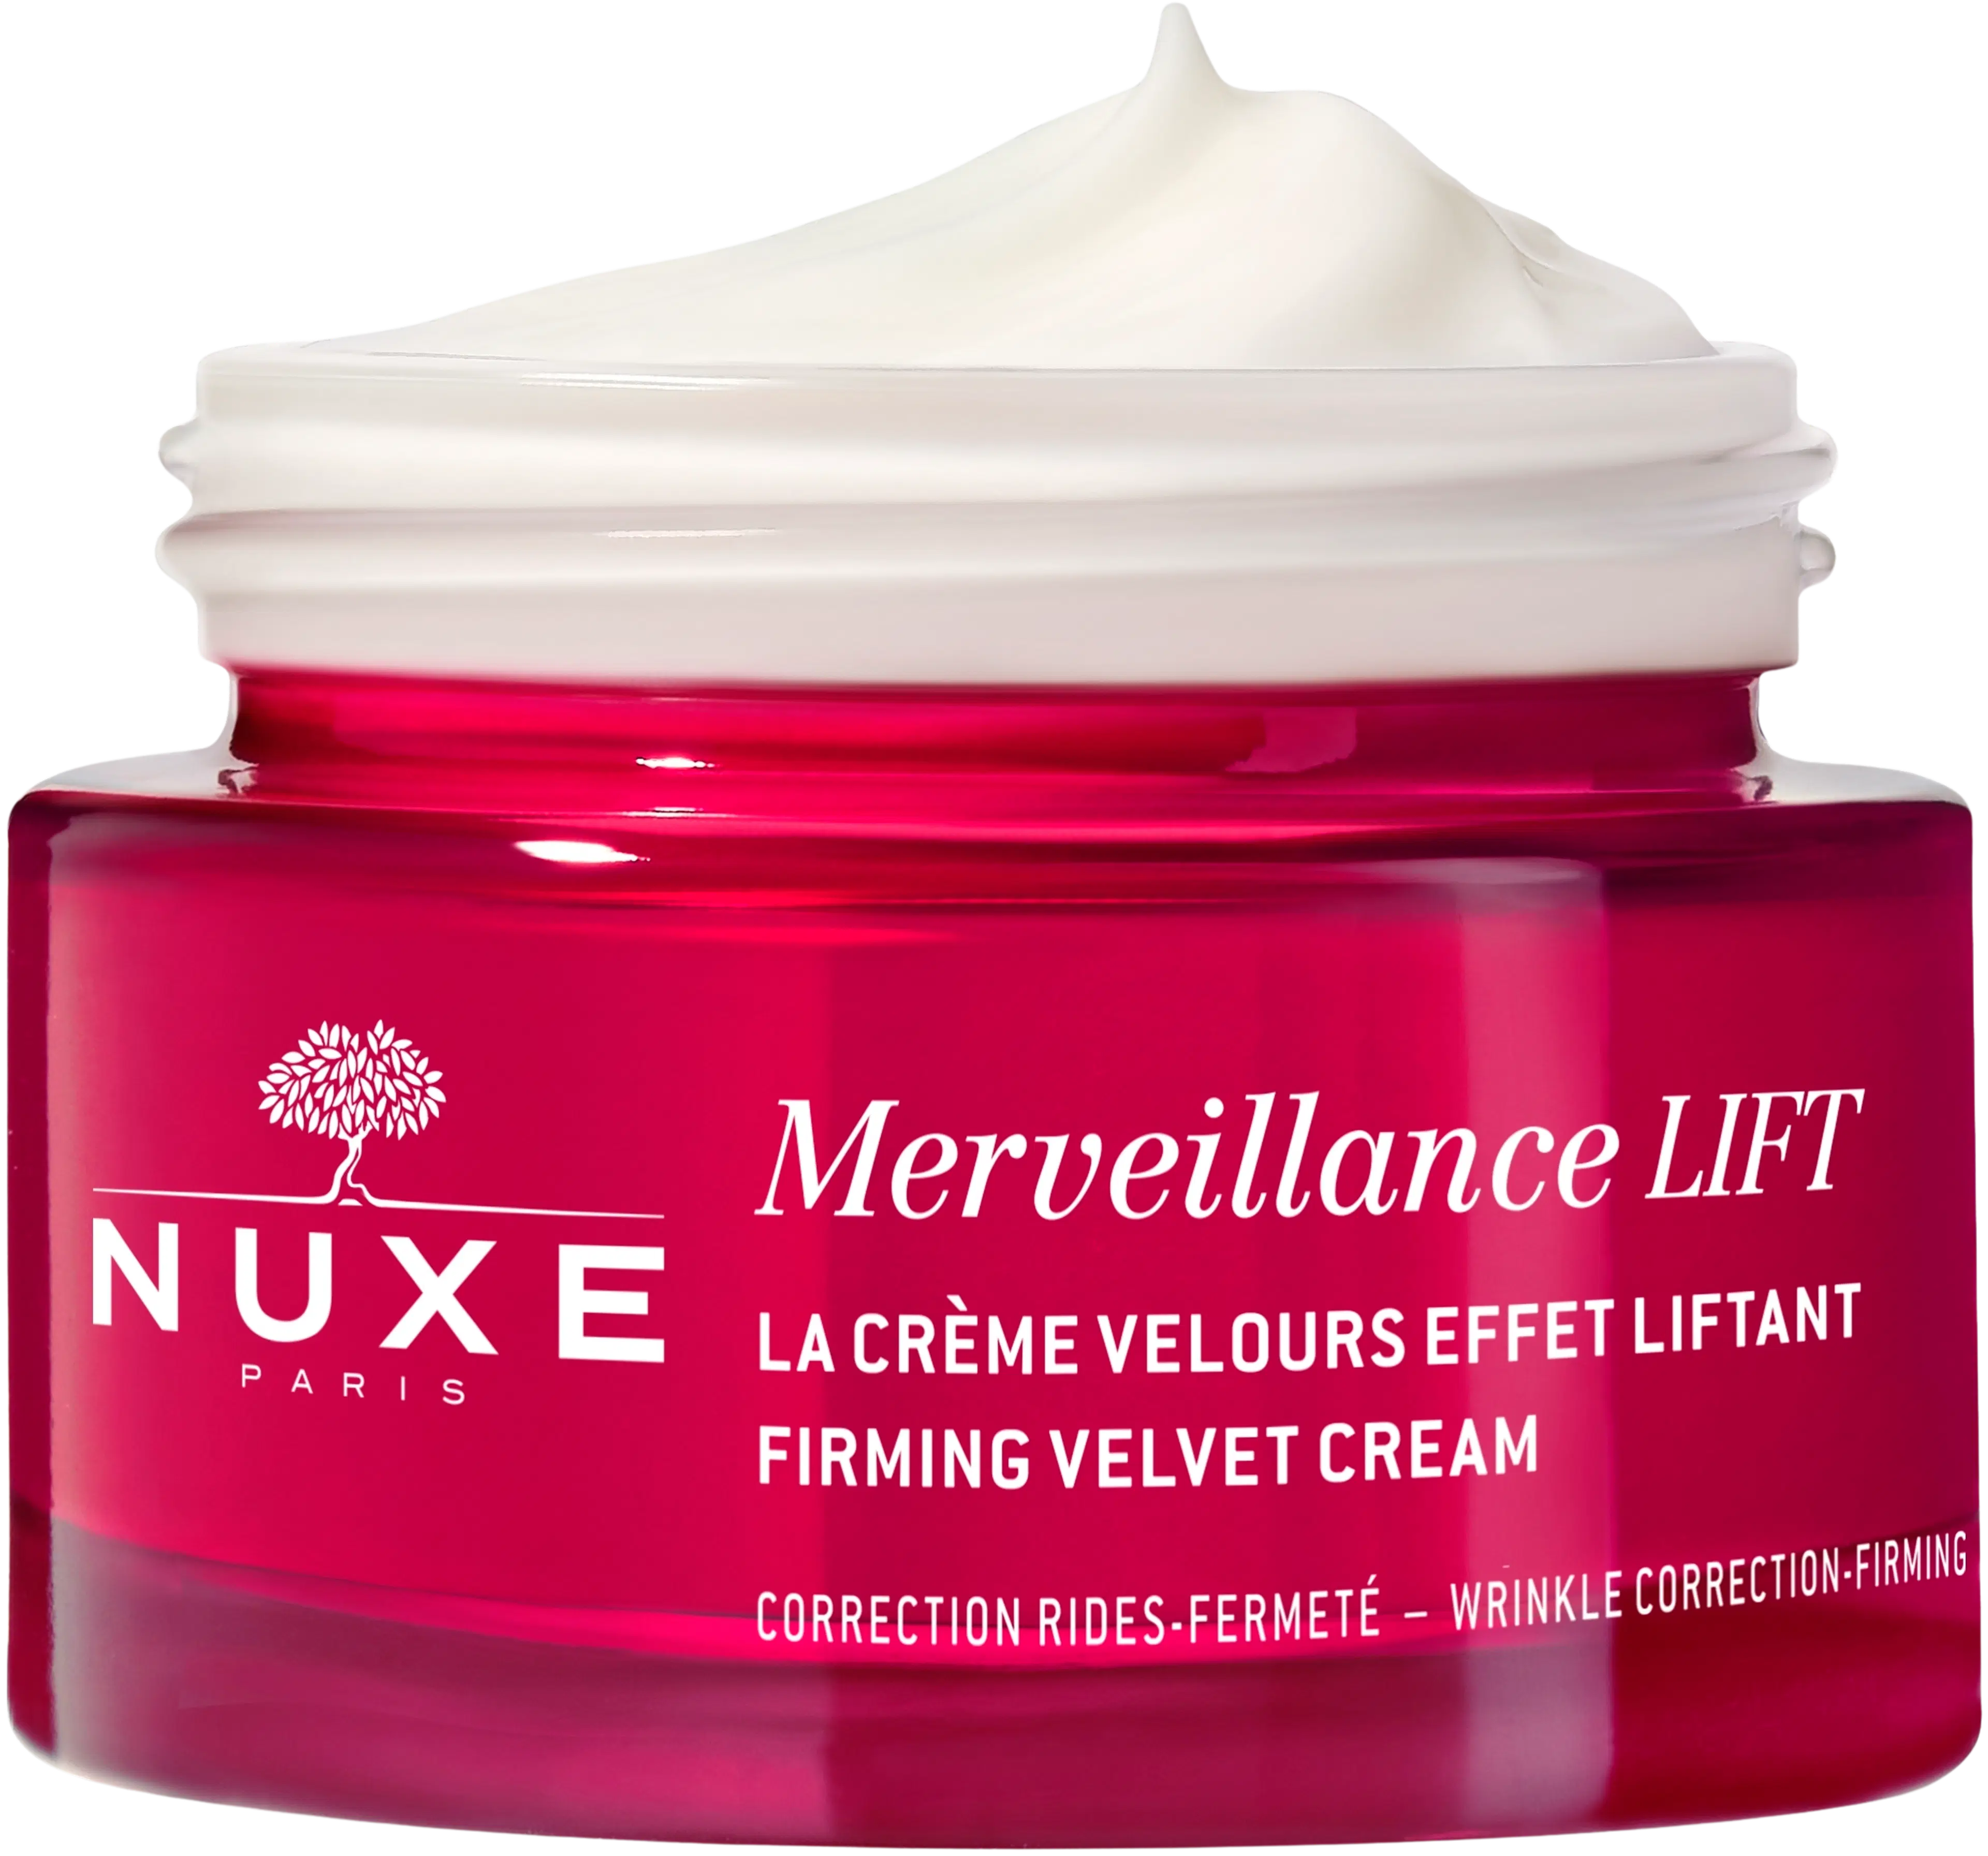 NUXE Merveillance Lift Firming Velvet Cream kasvovoide 50 ml